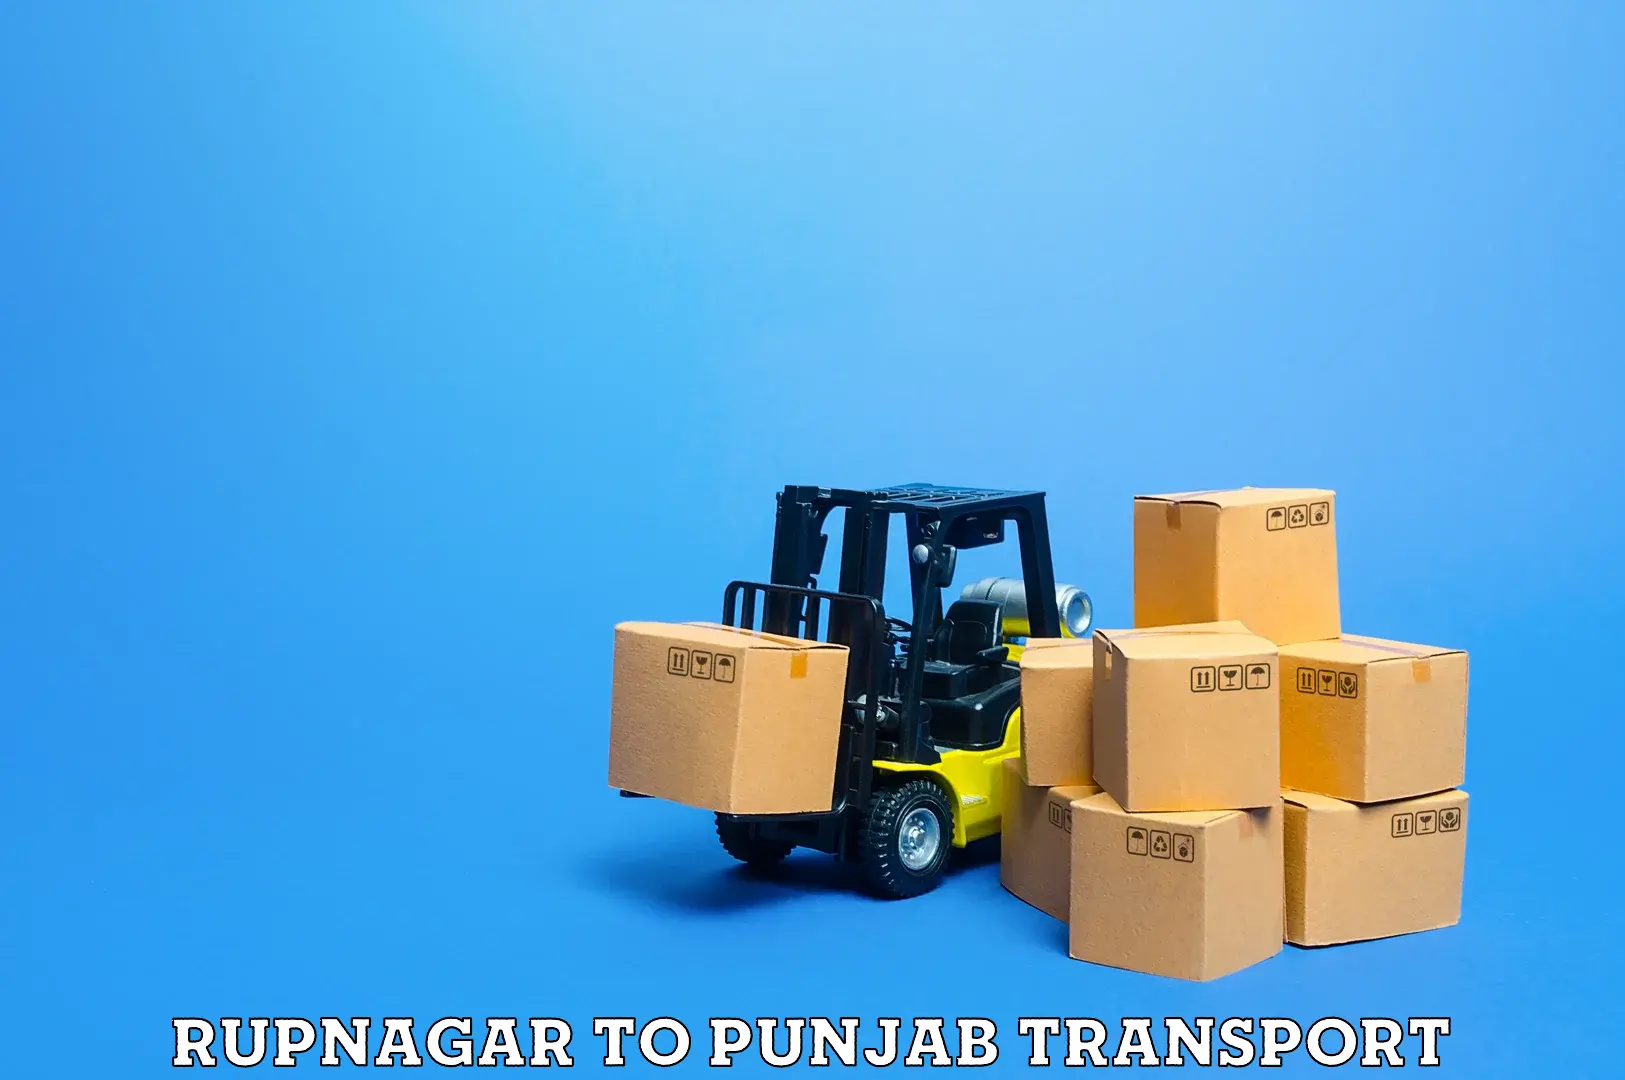 All India transport service Rupnagar to Punjab